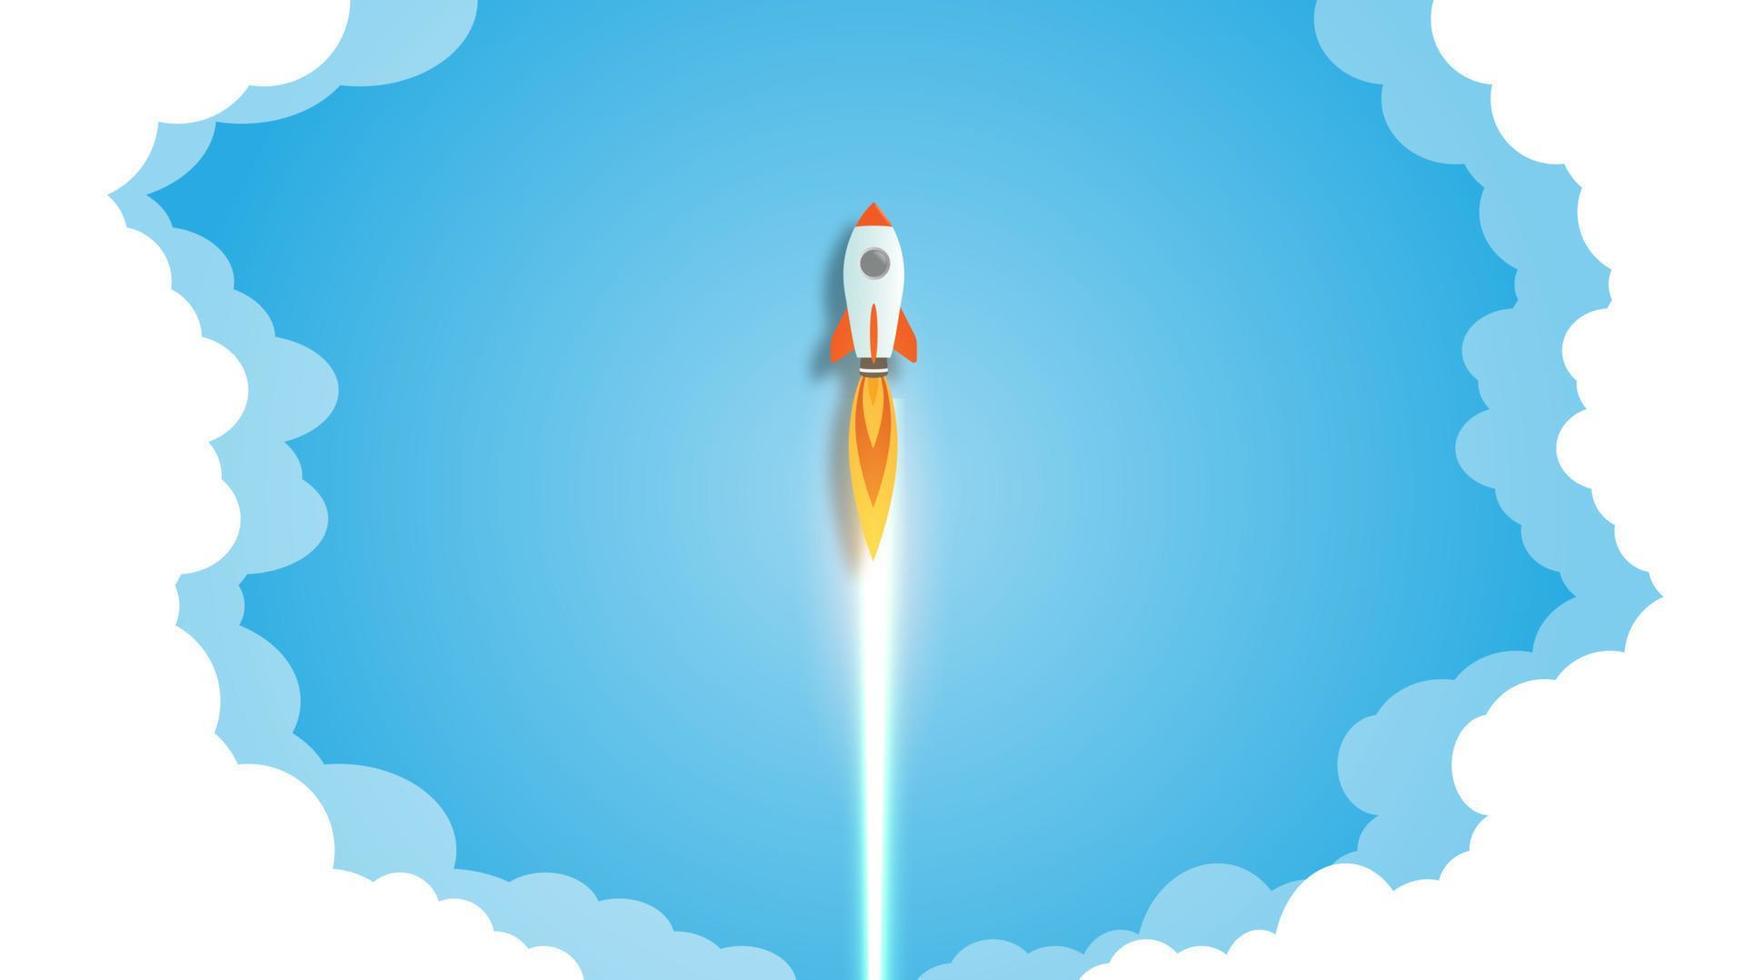 raketuppskjutning illustration, start affärsidé. vektor illustration